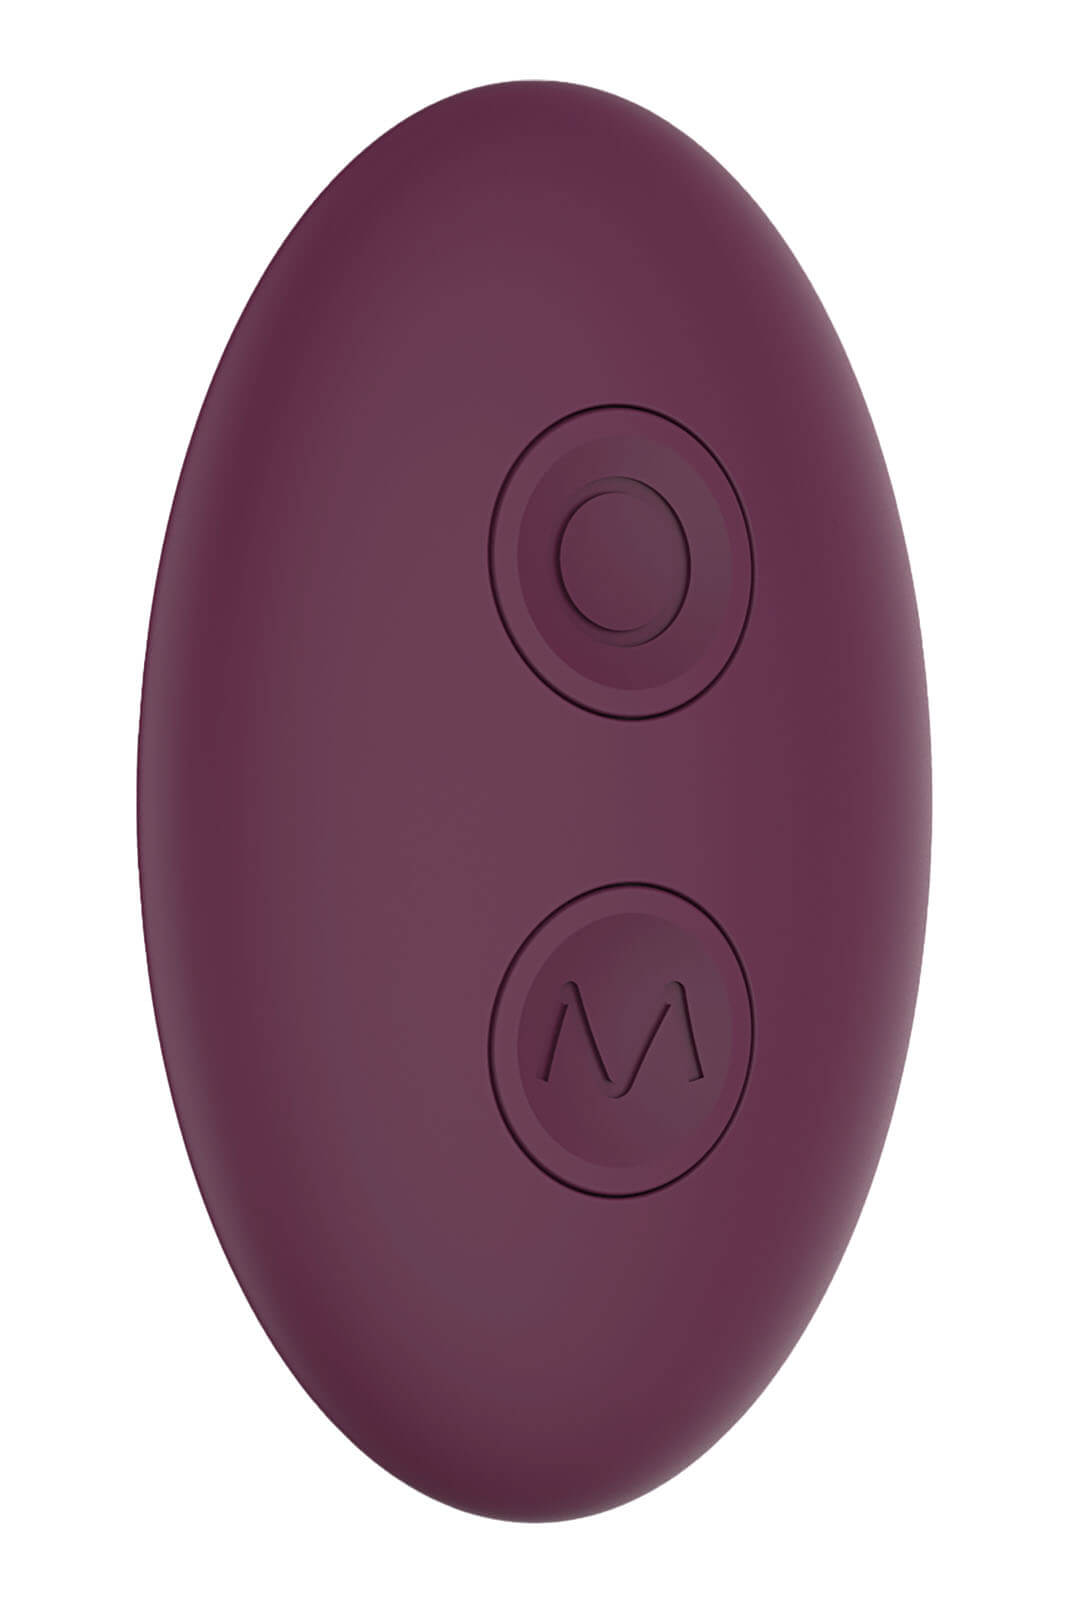 Dream Toys Essentials Ultra Dual Vibe (Purple), dvojitý vibrátor s diaľkovým ovládaním